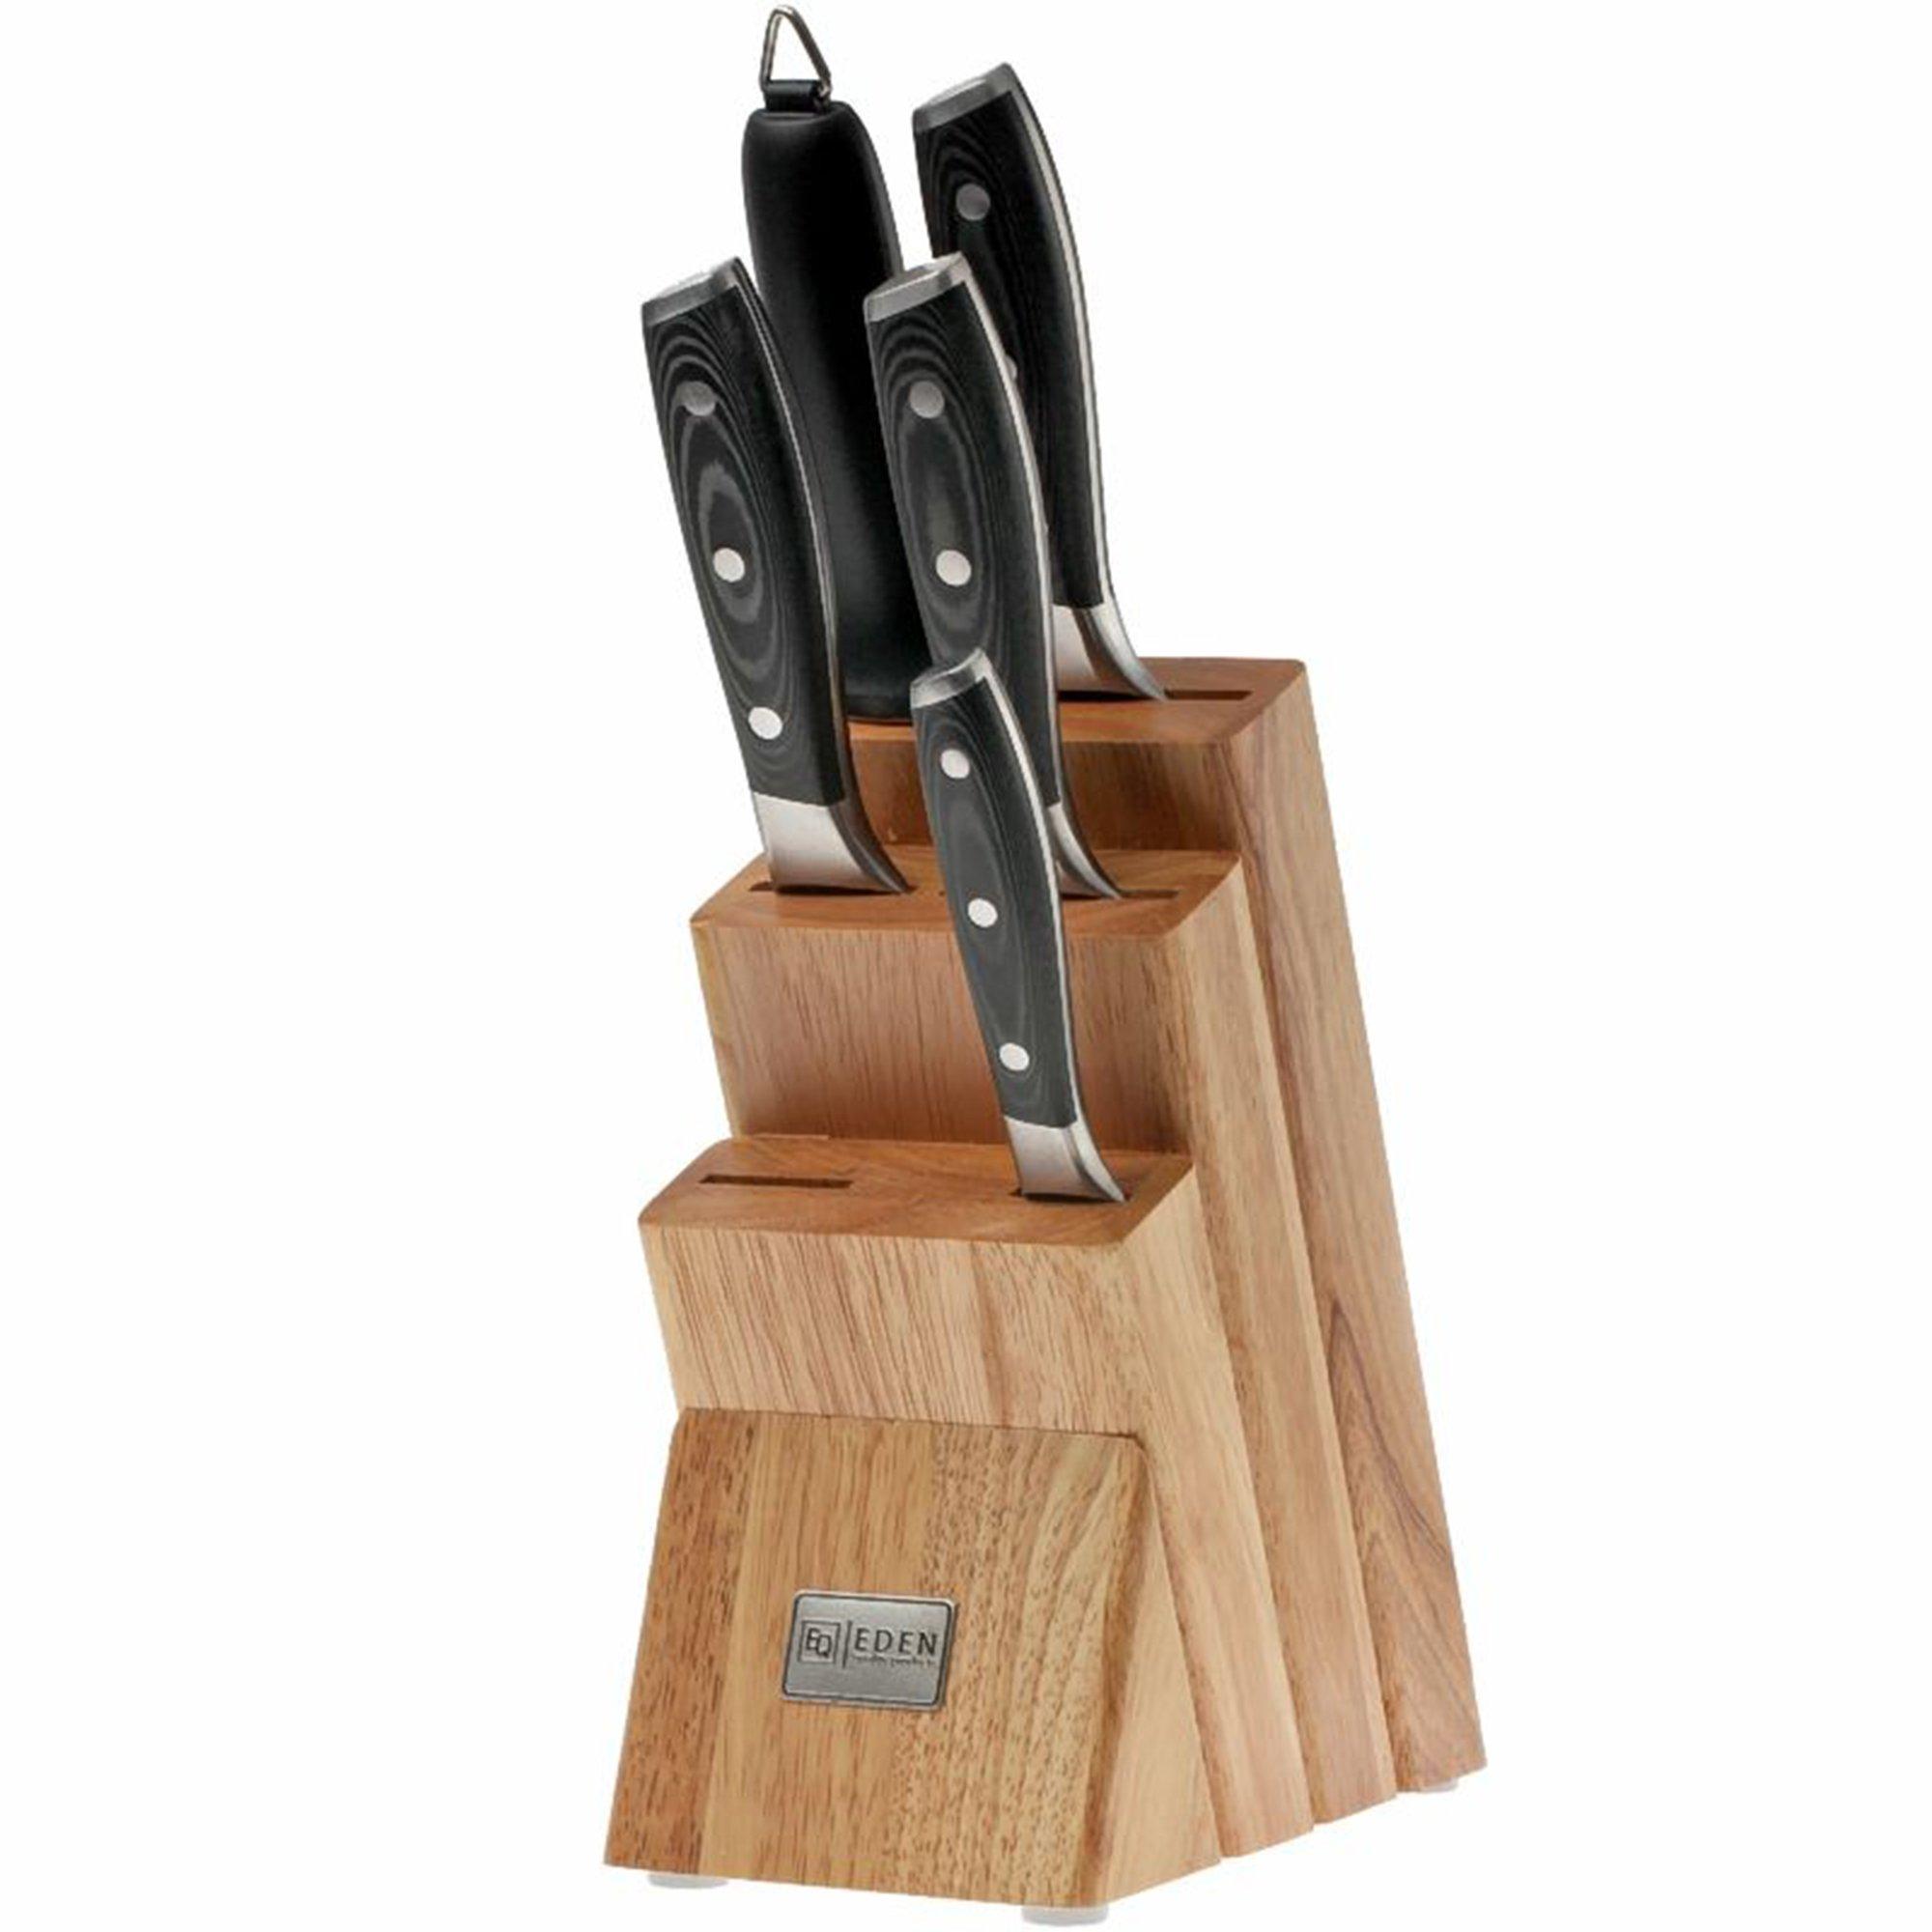 Tramontina 13 Piece Knife Set tools knife set kitchen knife set kitchen  knife - AliExpress